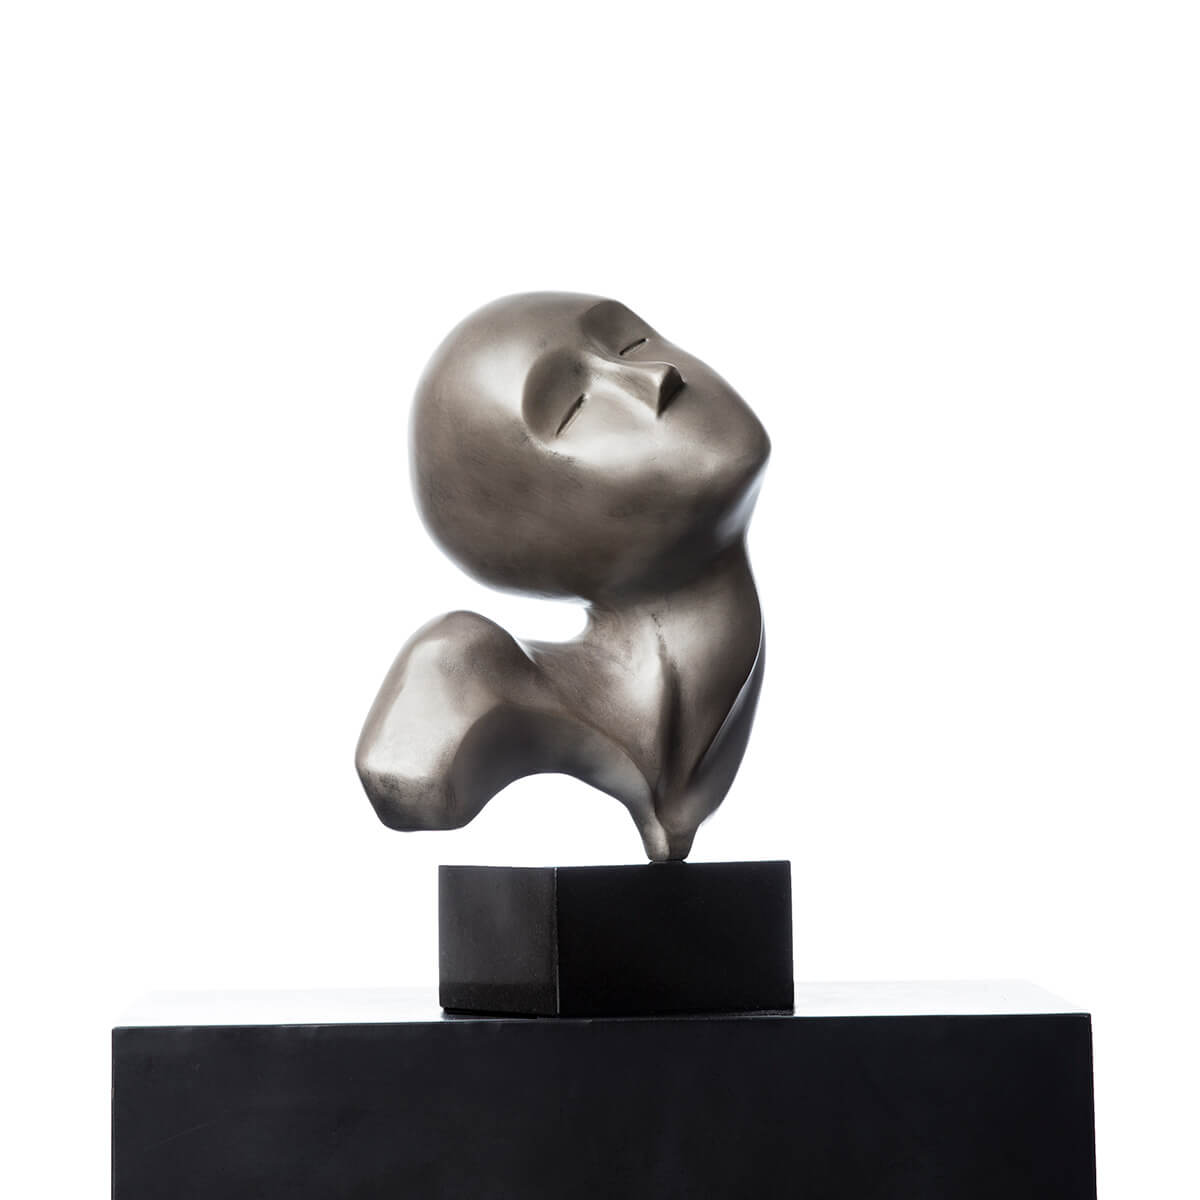 Robert-Helle-Sculpture-Gallery-Contentment-2-1200x1200